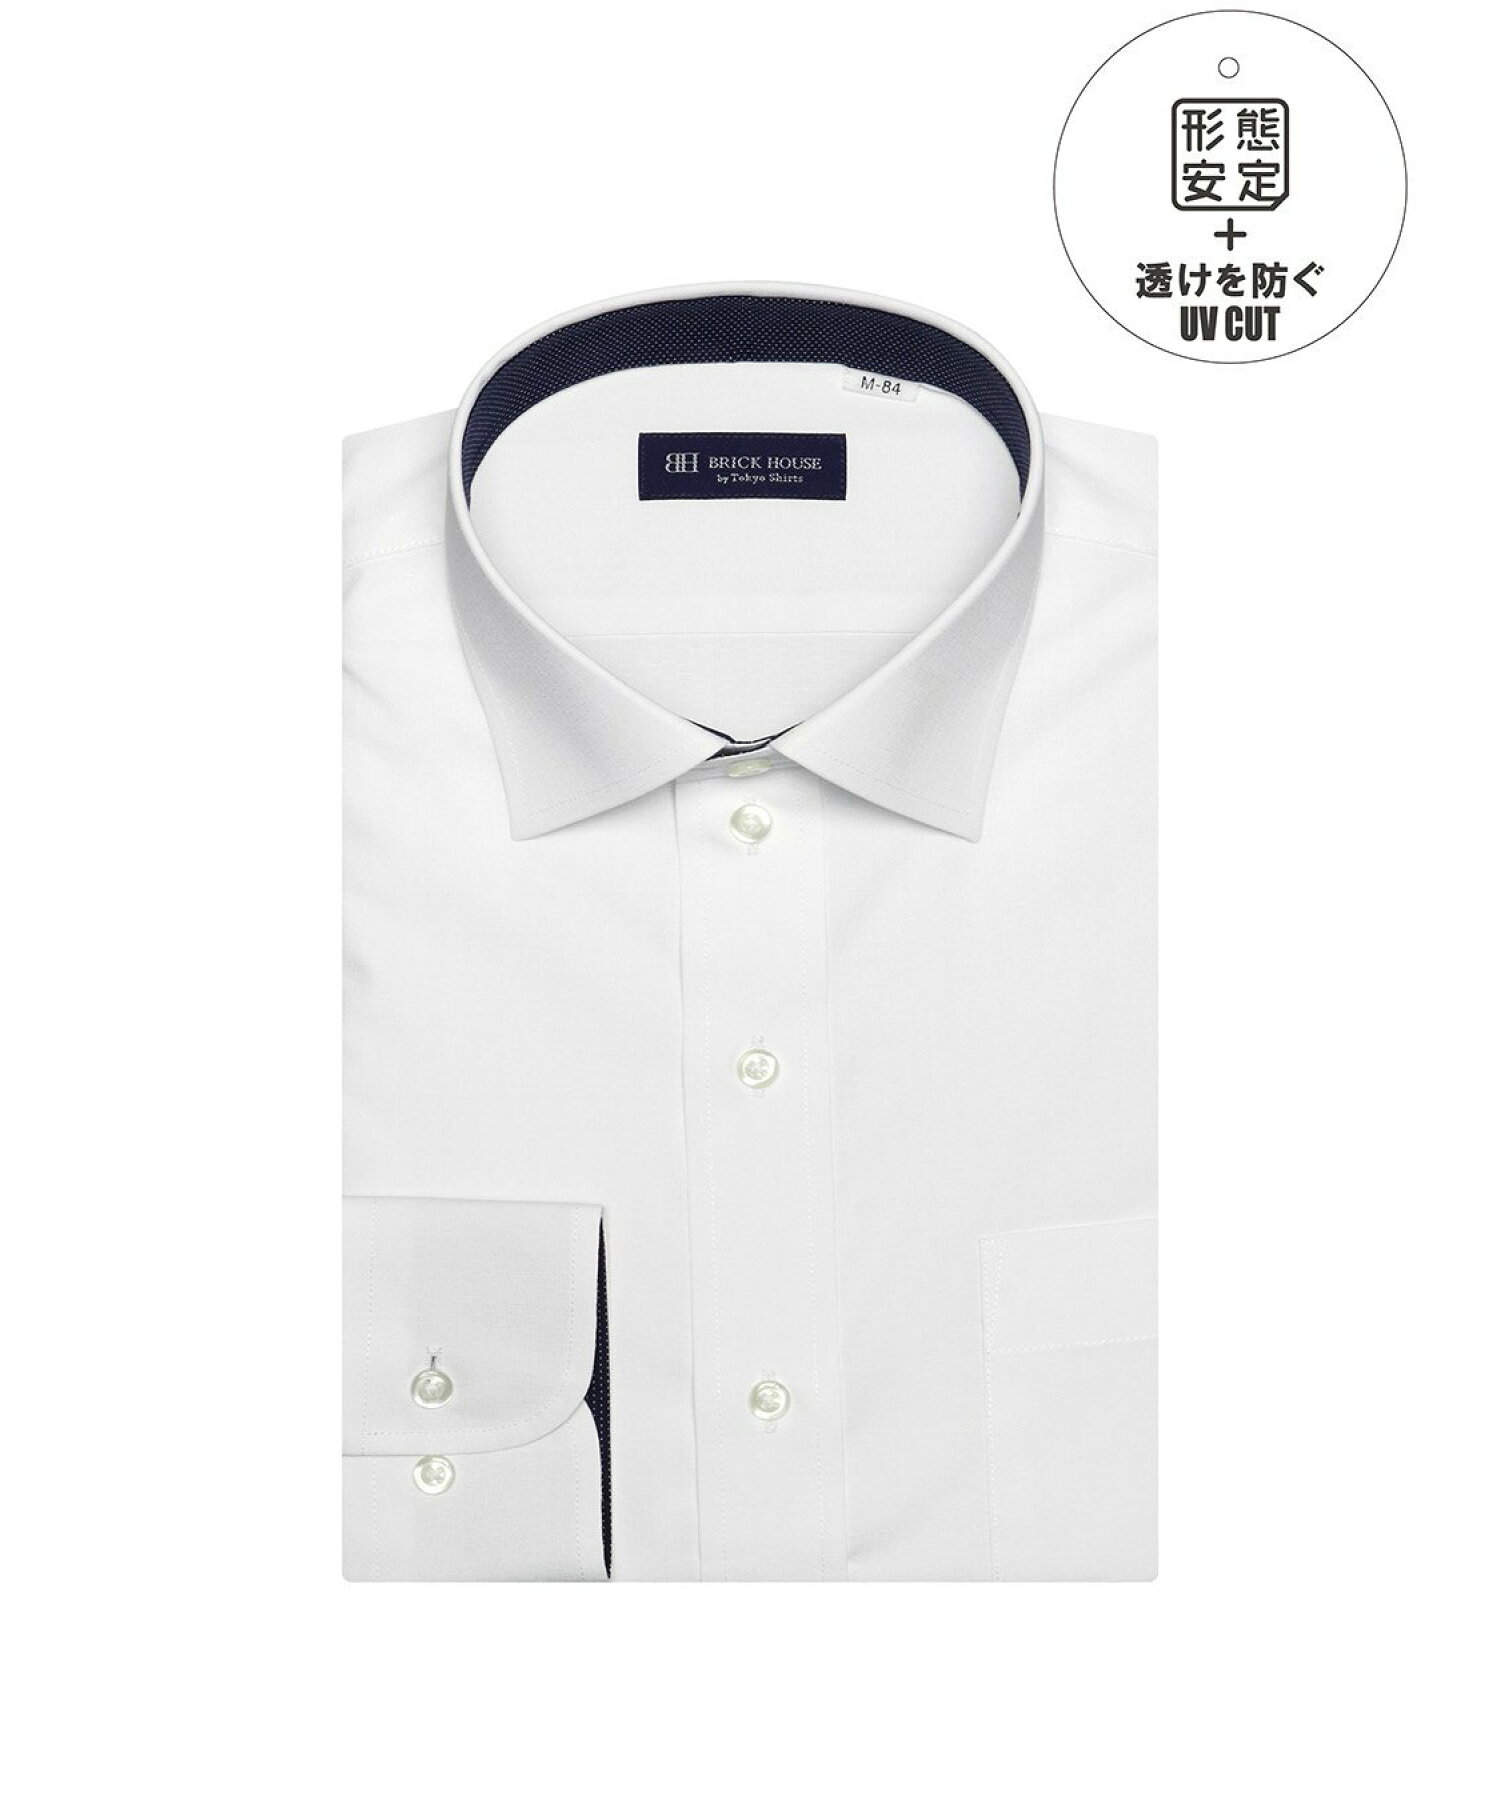 【透け防止】 形態安定 ワイドカラー 長袖ワイシャツ BM01I303AB16W1S-90